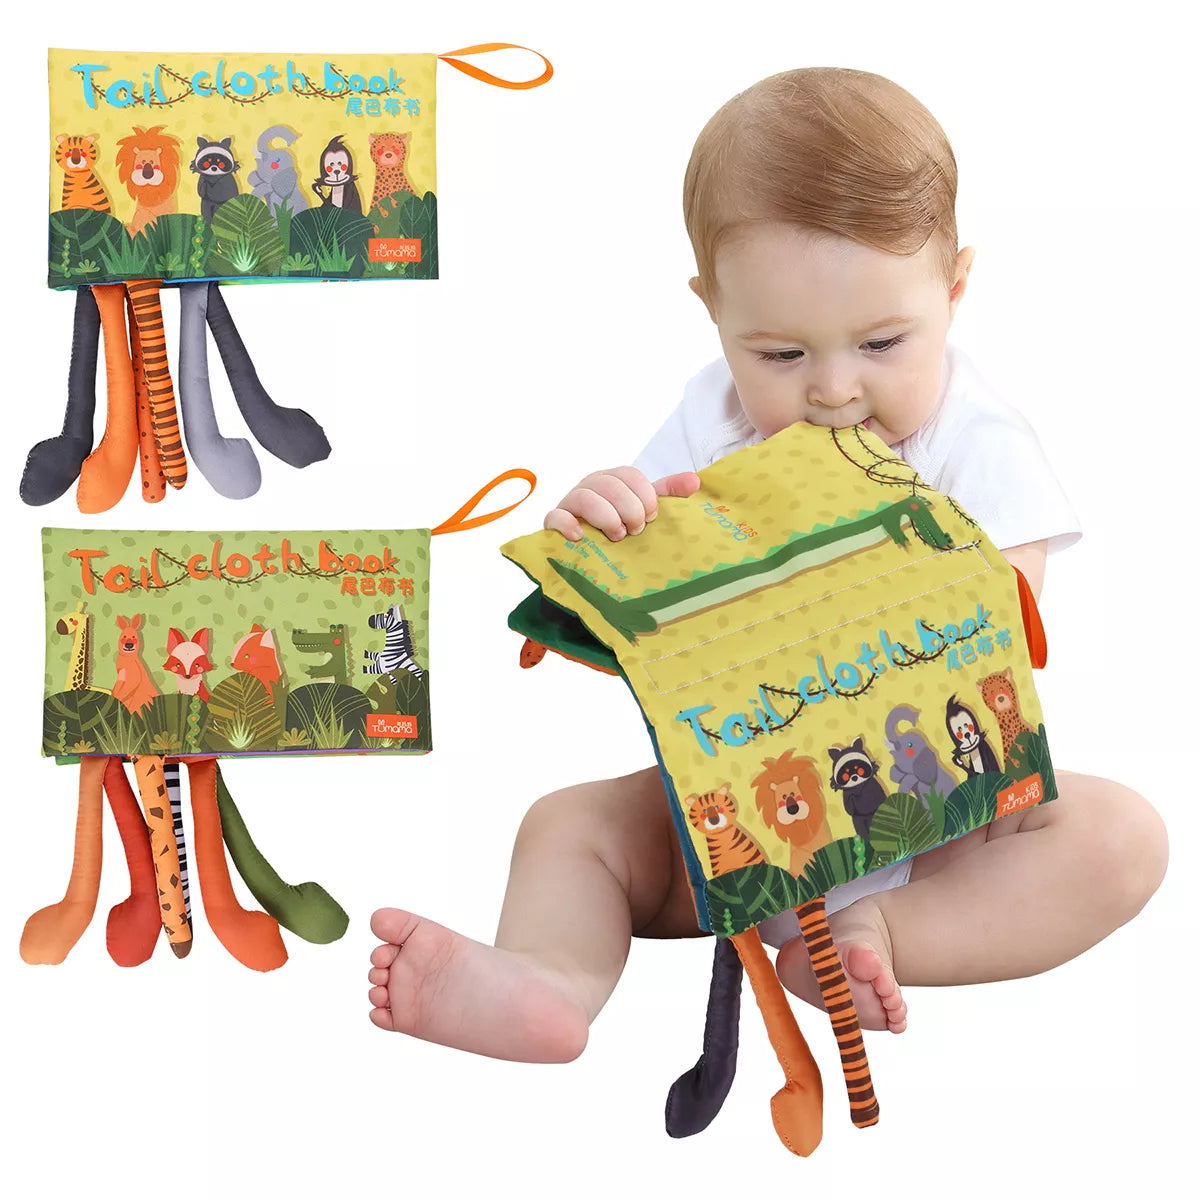 헝겊 책, 감각 책 장난감 부드러운 정글 꼬리 삐걱 거리는 소리와 주름 소리 아기 유아를위한 바쁜 책 학습 장난감 3 개월 이상